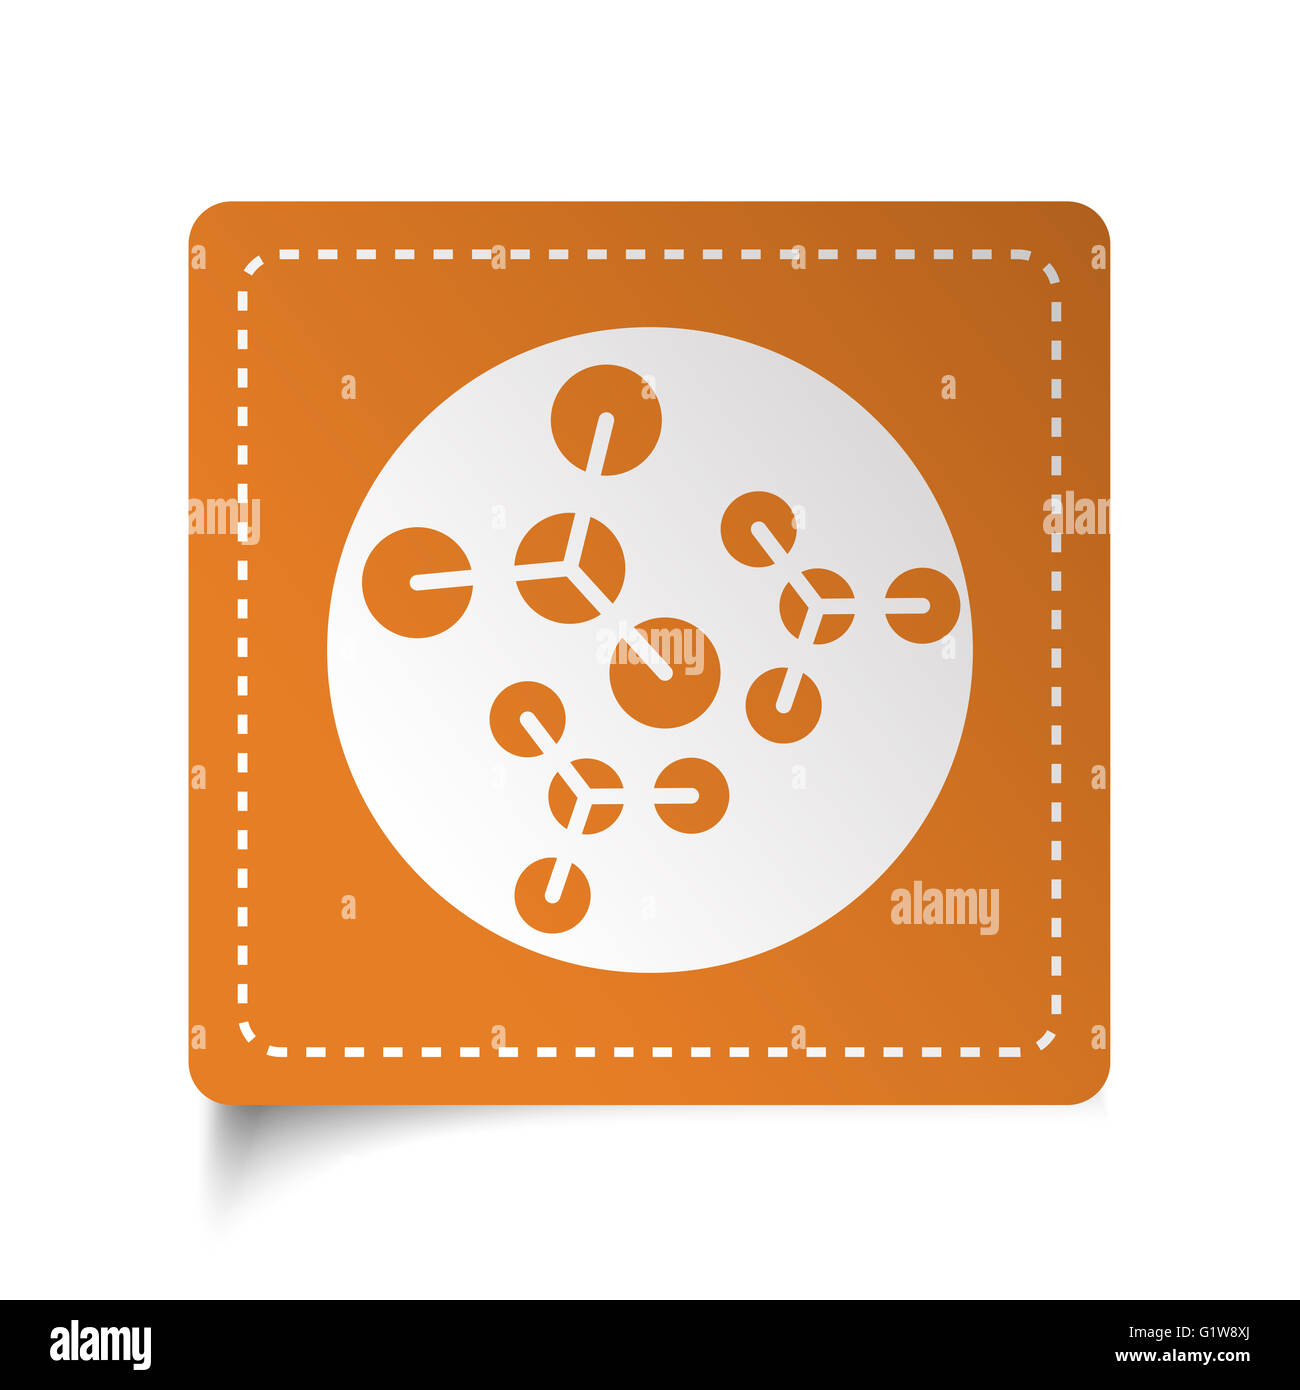 White flat Molecules icon on orange sticker Stock Photo